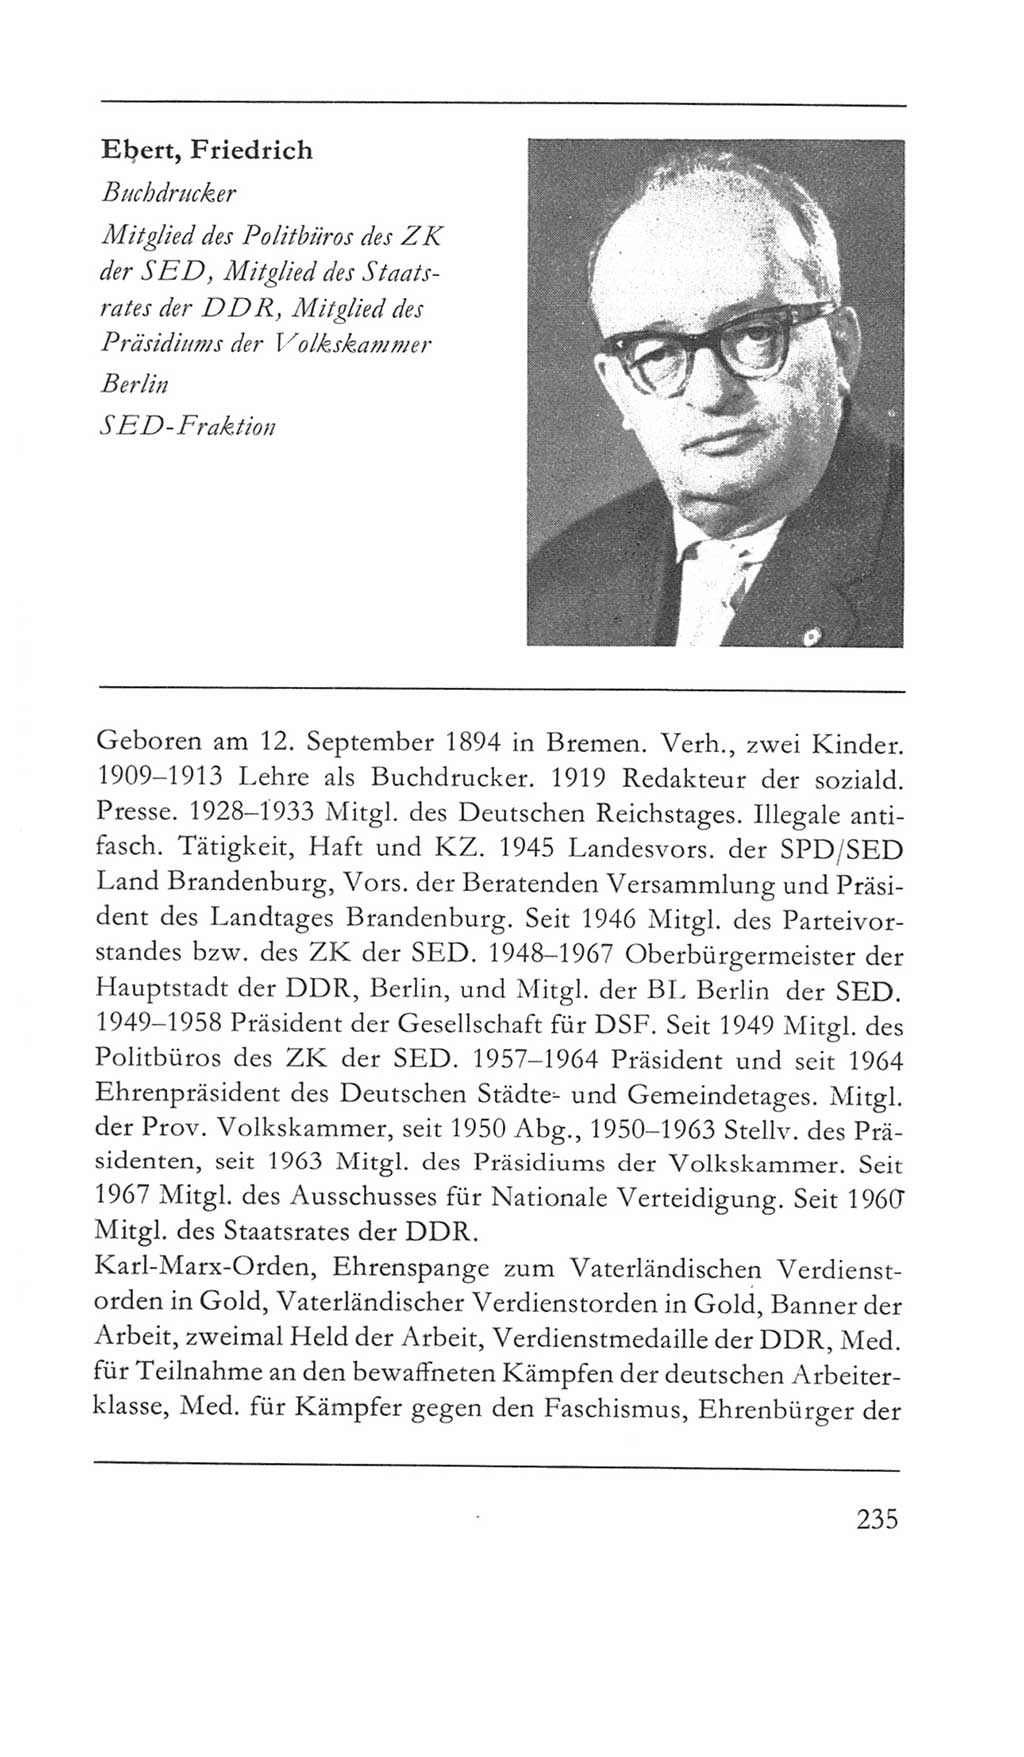 Volkskammer (VK) der Deutschen Demokratischen Republik (DDR) 5. Wahlperiode 1967-1971, Seite 235 (VK. DDR 5. WP. 1967-1971, S. 235)